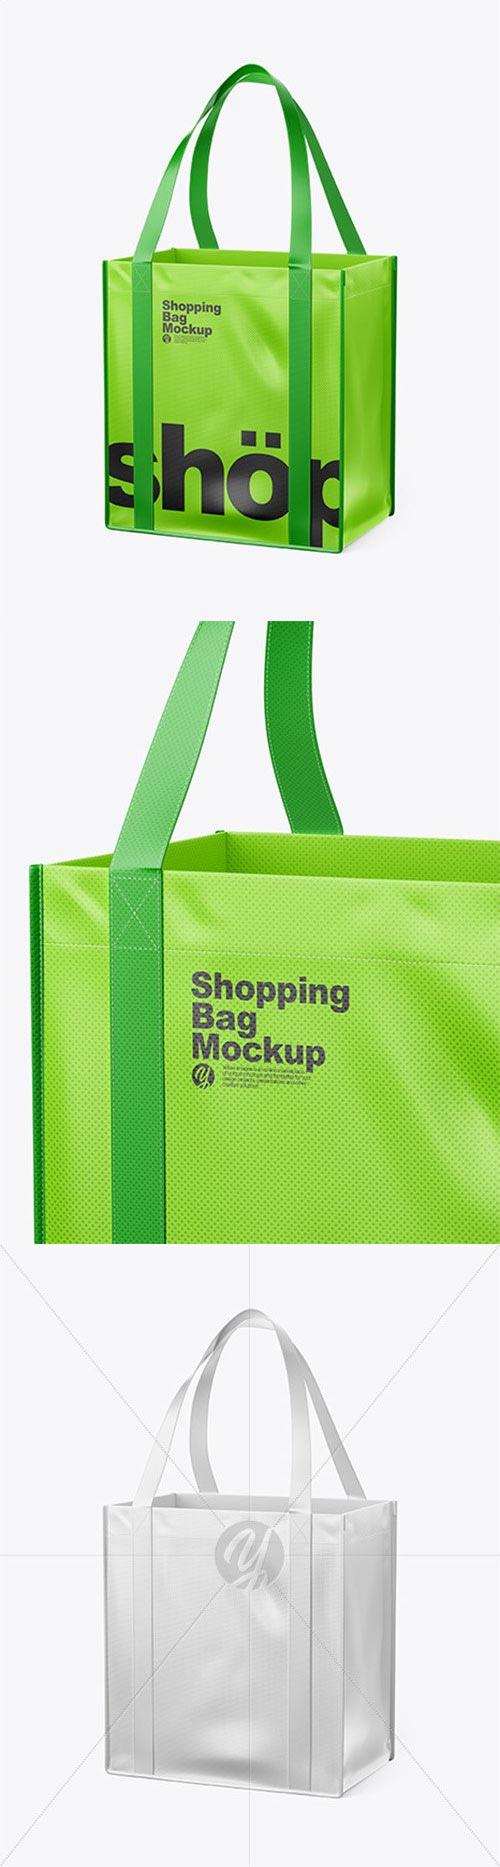 Shopping Bag Mockup 34638